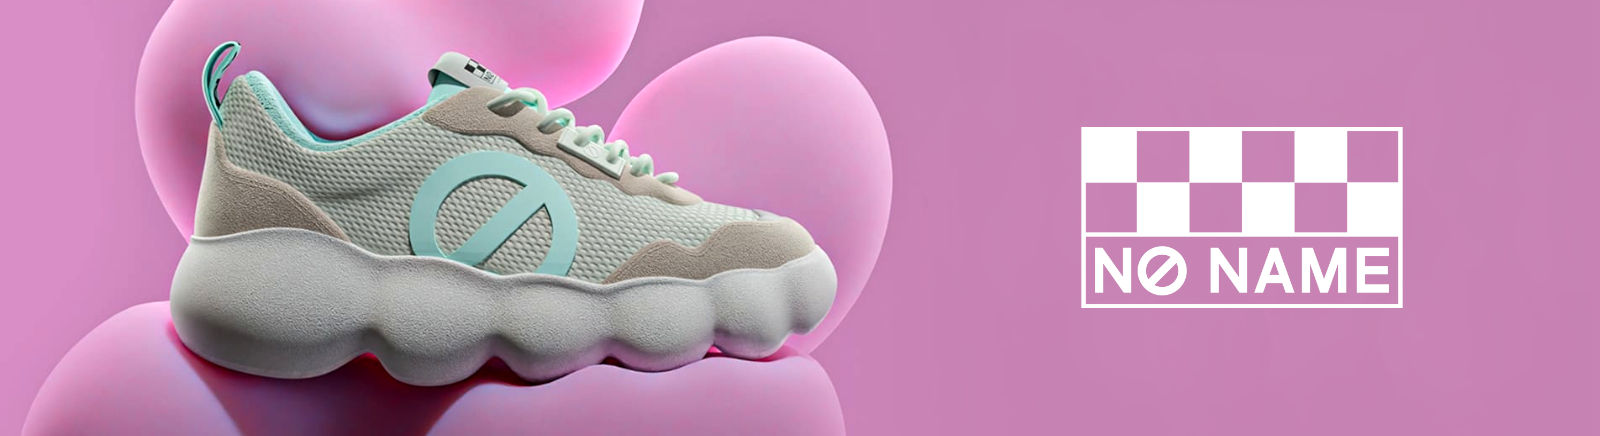 Juppen: No Name Coole und moderne Sneaker für Damen online shoppen